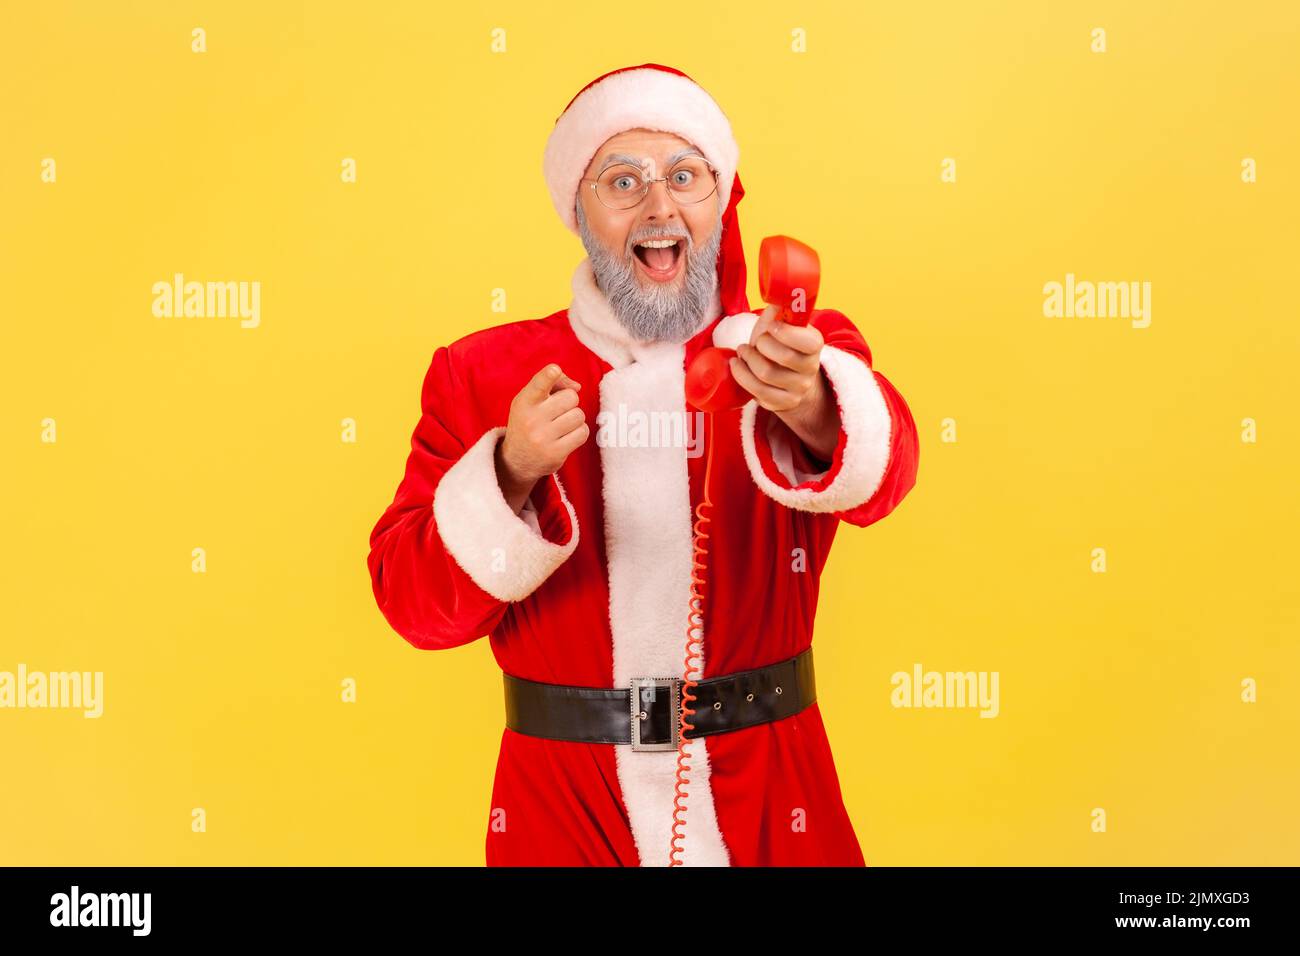 Älterer Mann mit grauem Bart trägt weihnachtsmann Kostüm hält Festnetz-Telefon Hörer, ruft Sie mit Fests zu gratulieren, zeigt auf Kamera. Innenaufnahme des Studios isoliert auf gelbem Hintergrund Stockfoto